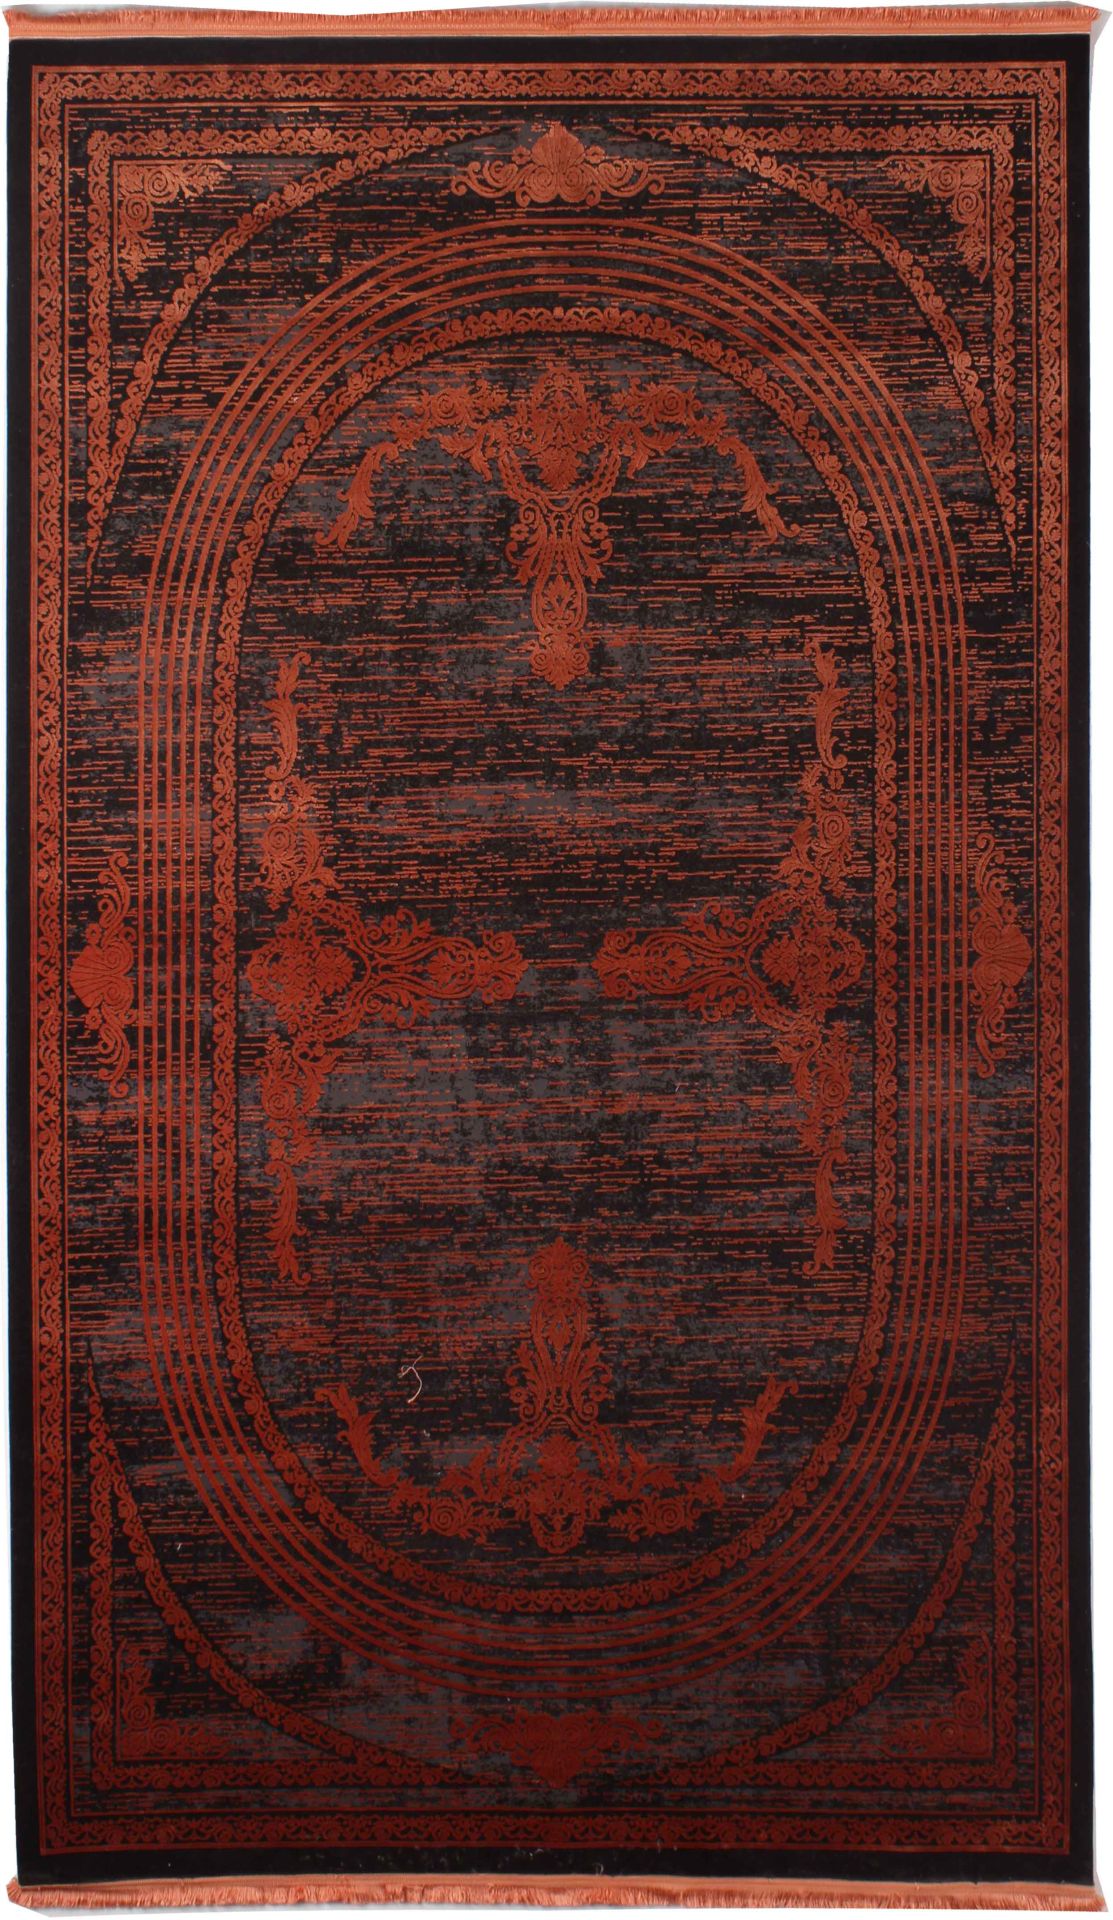  Neo Classic Orange Bamboo Carpet